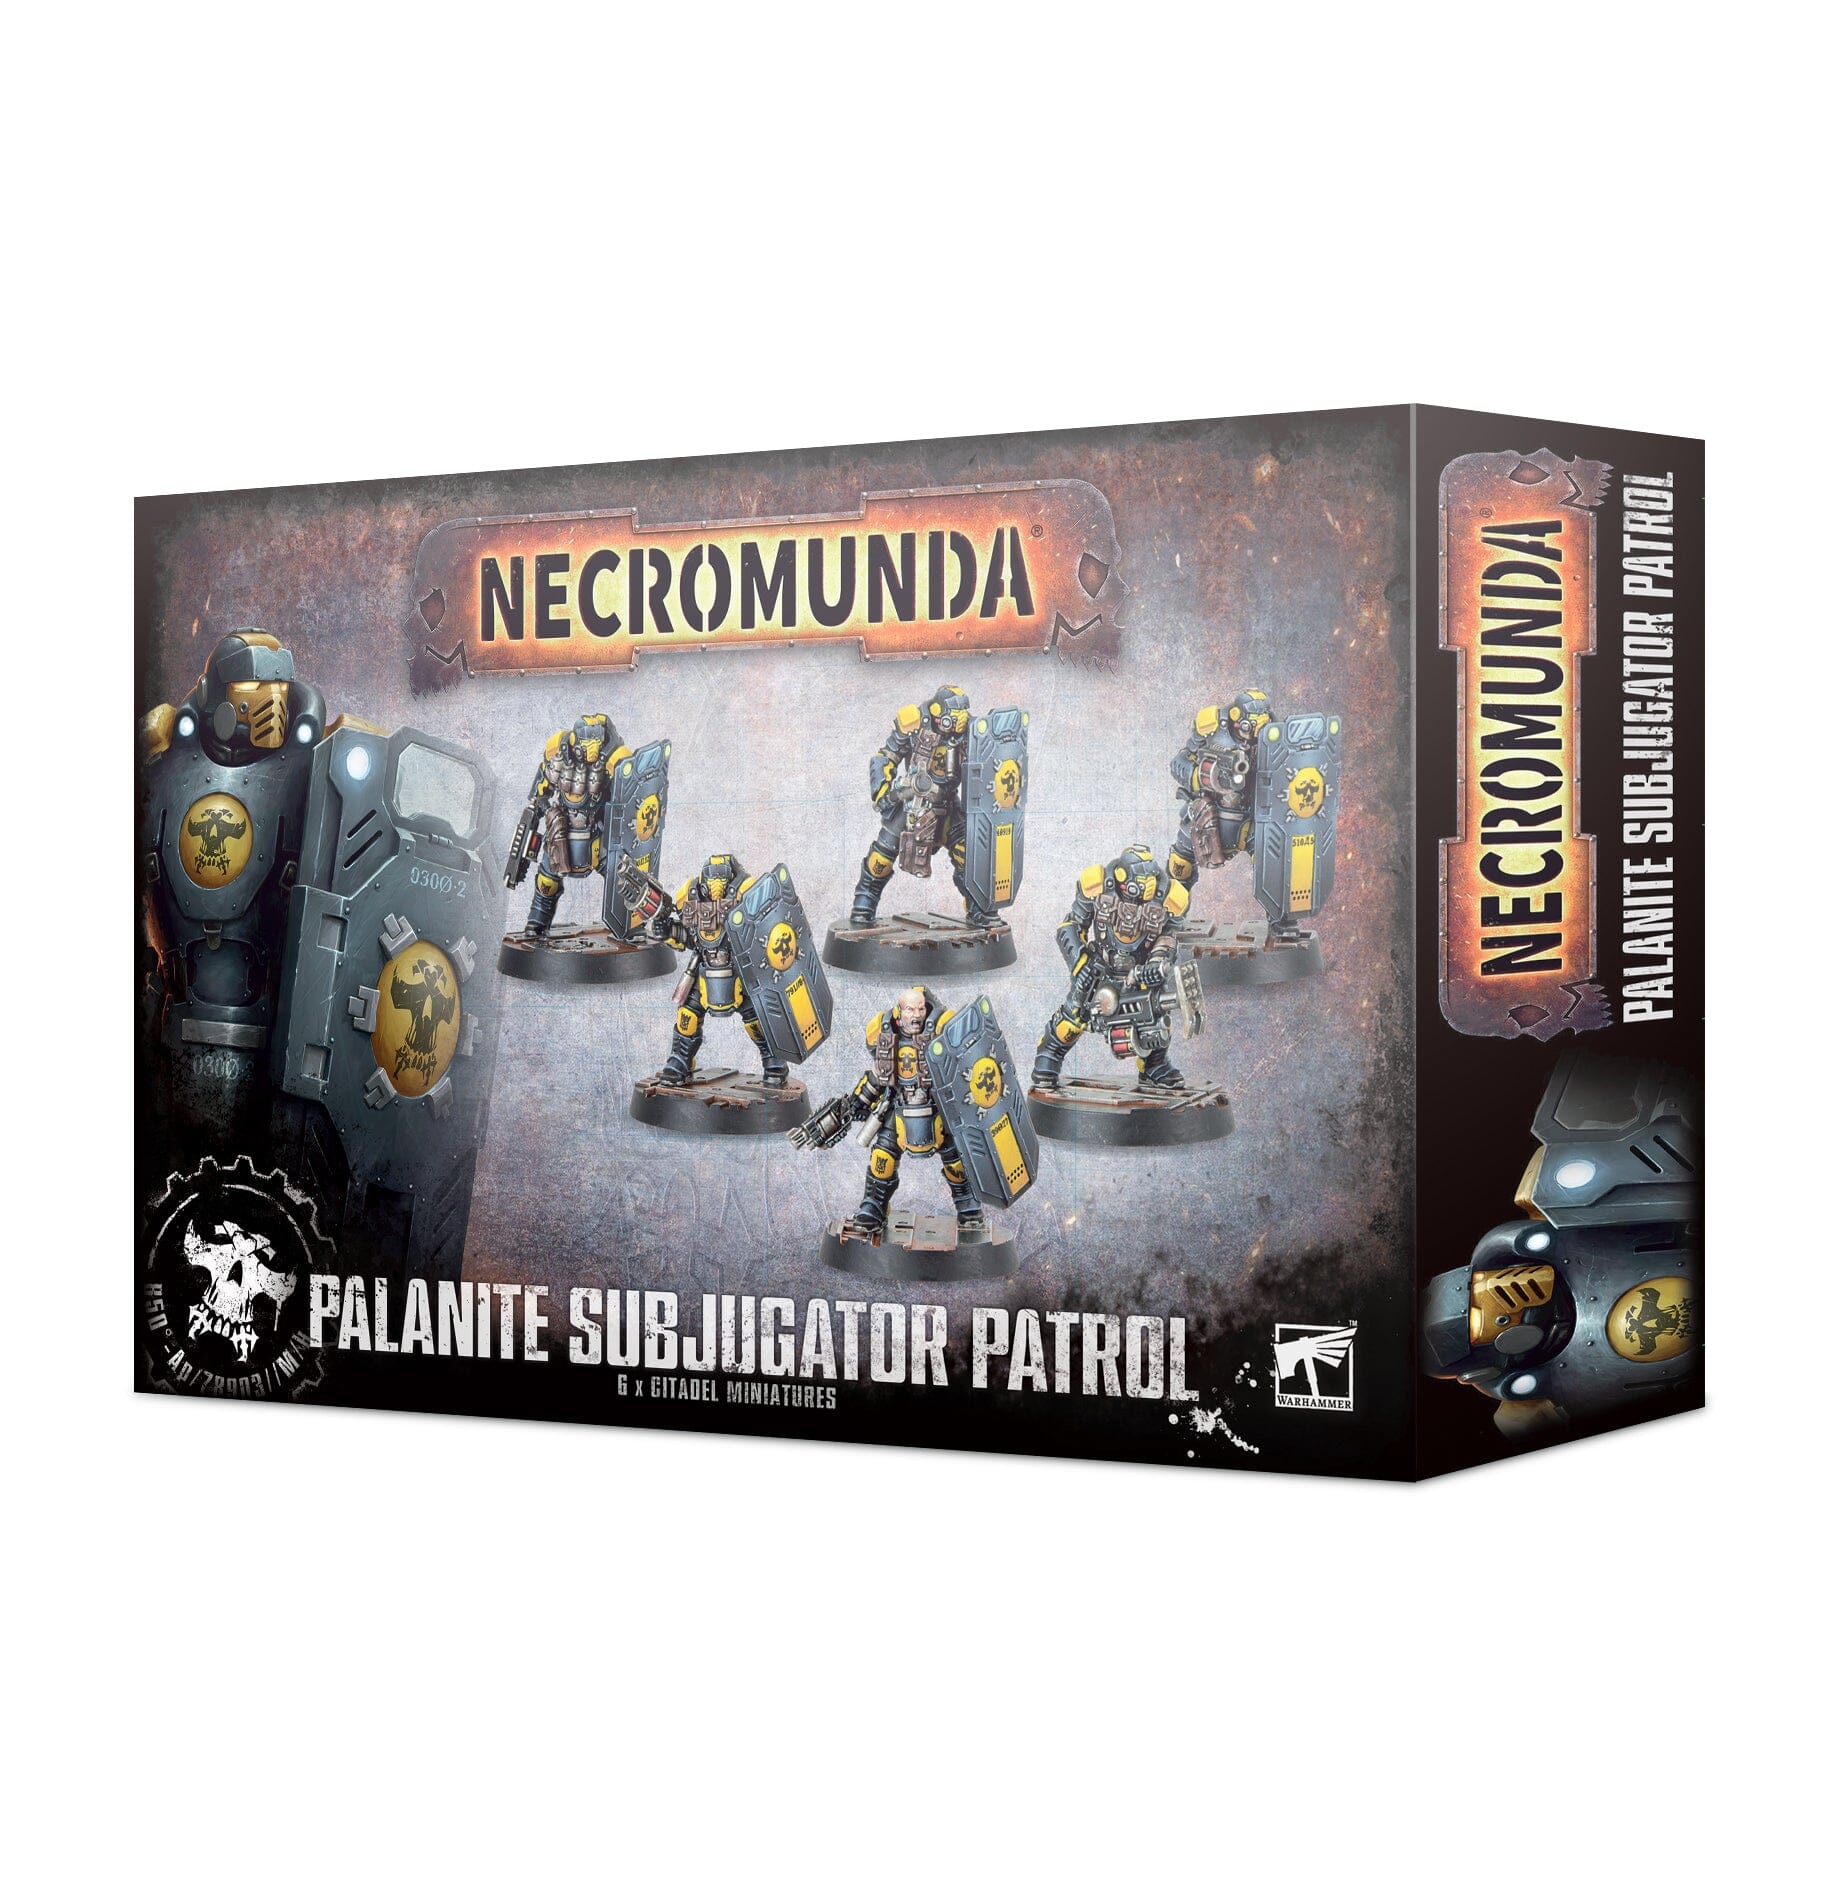 Necromunda: Palanite Subjucator Patrol Games Workshop Games Workshop  | Multizone: Comics And Games